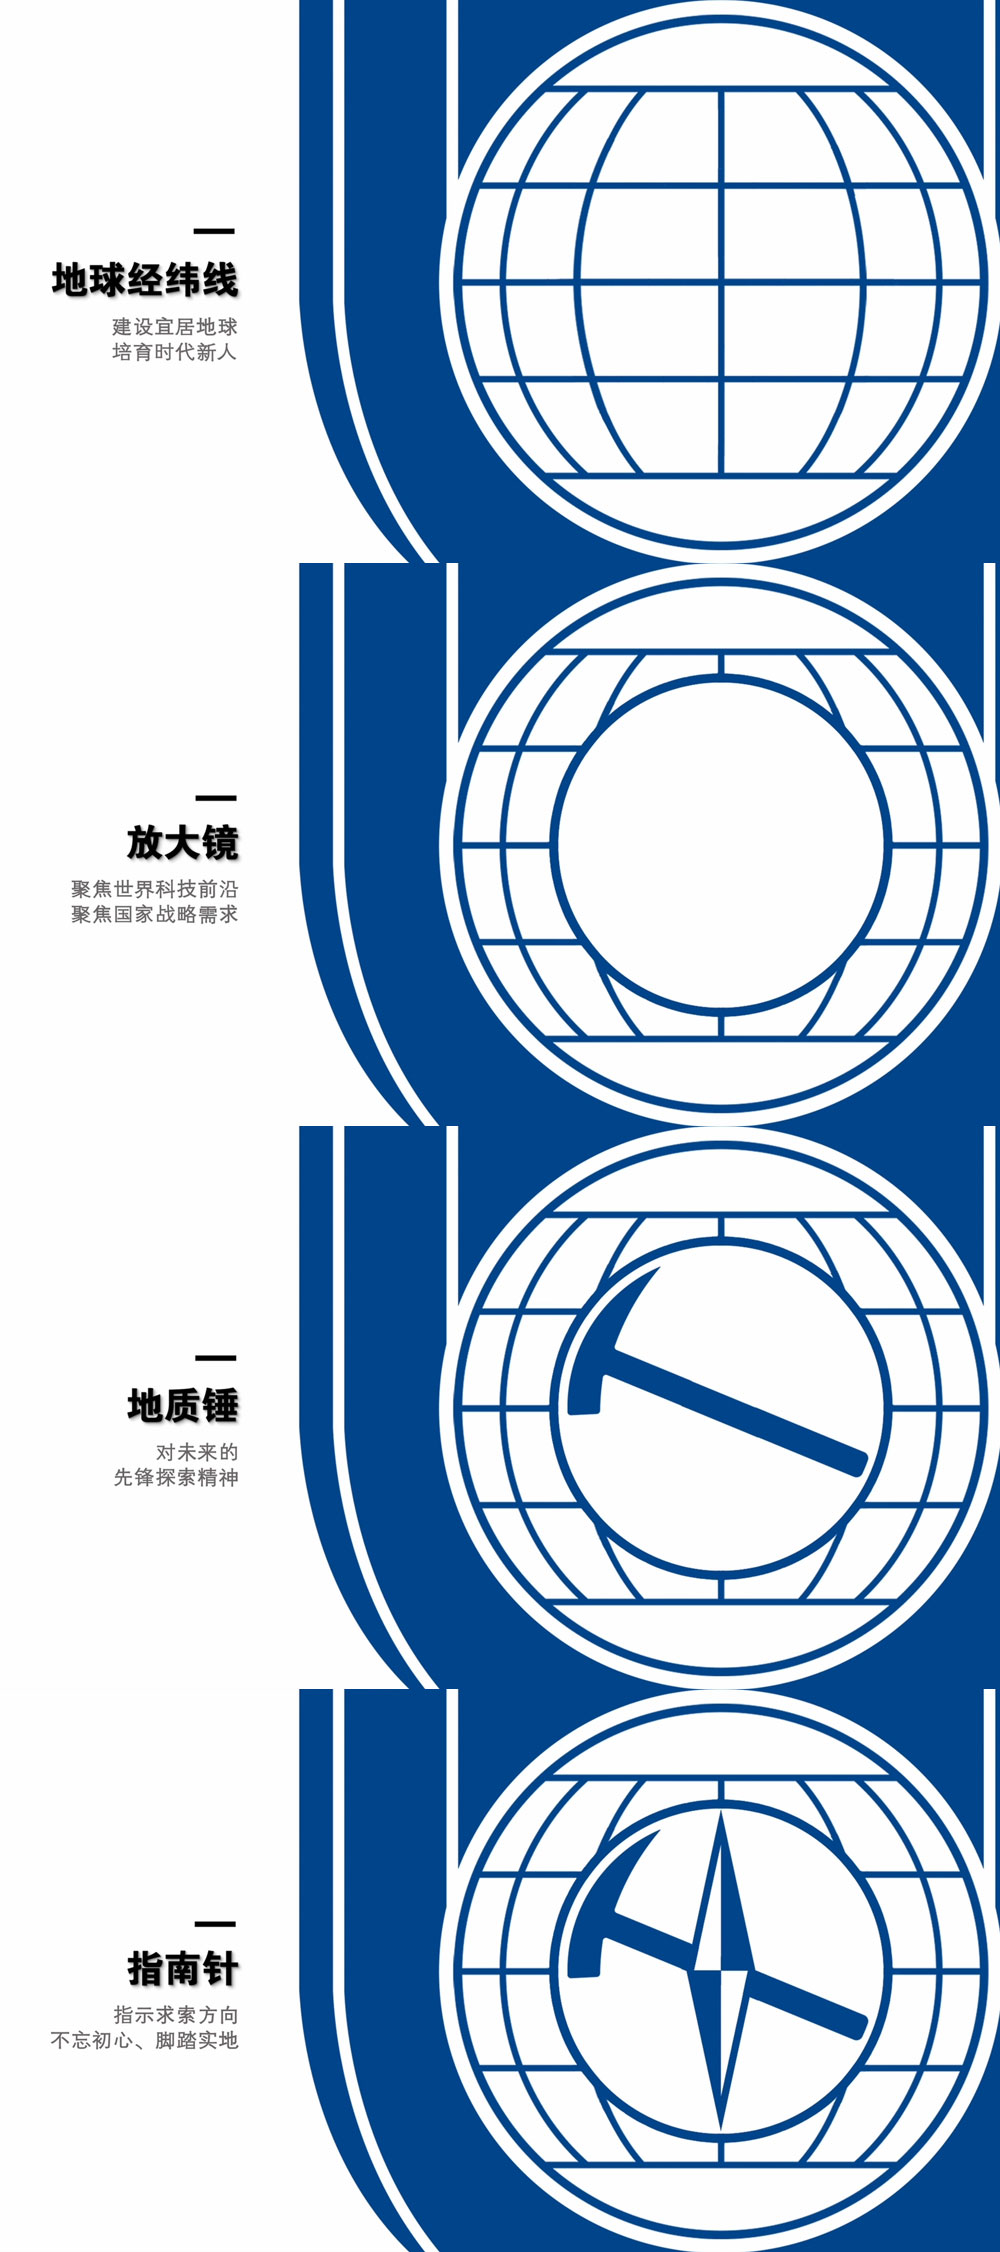 中国地质大学（北京）新版校徽正式启用